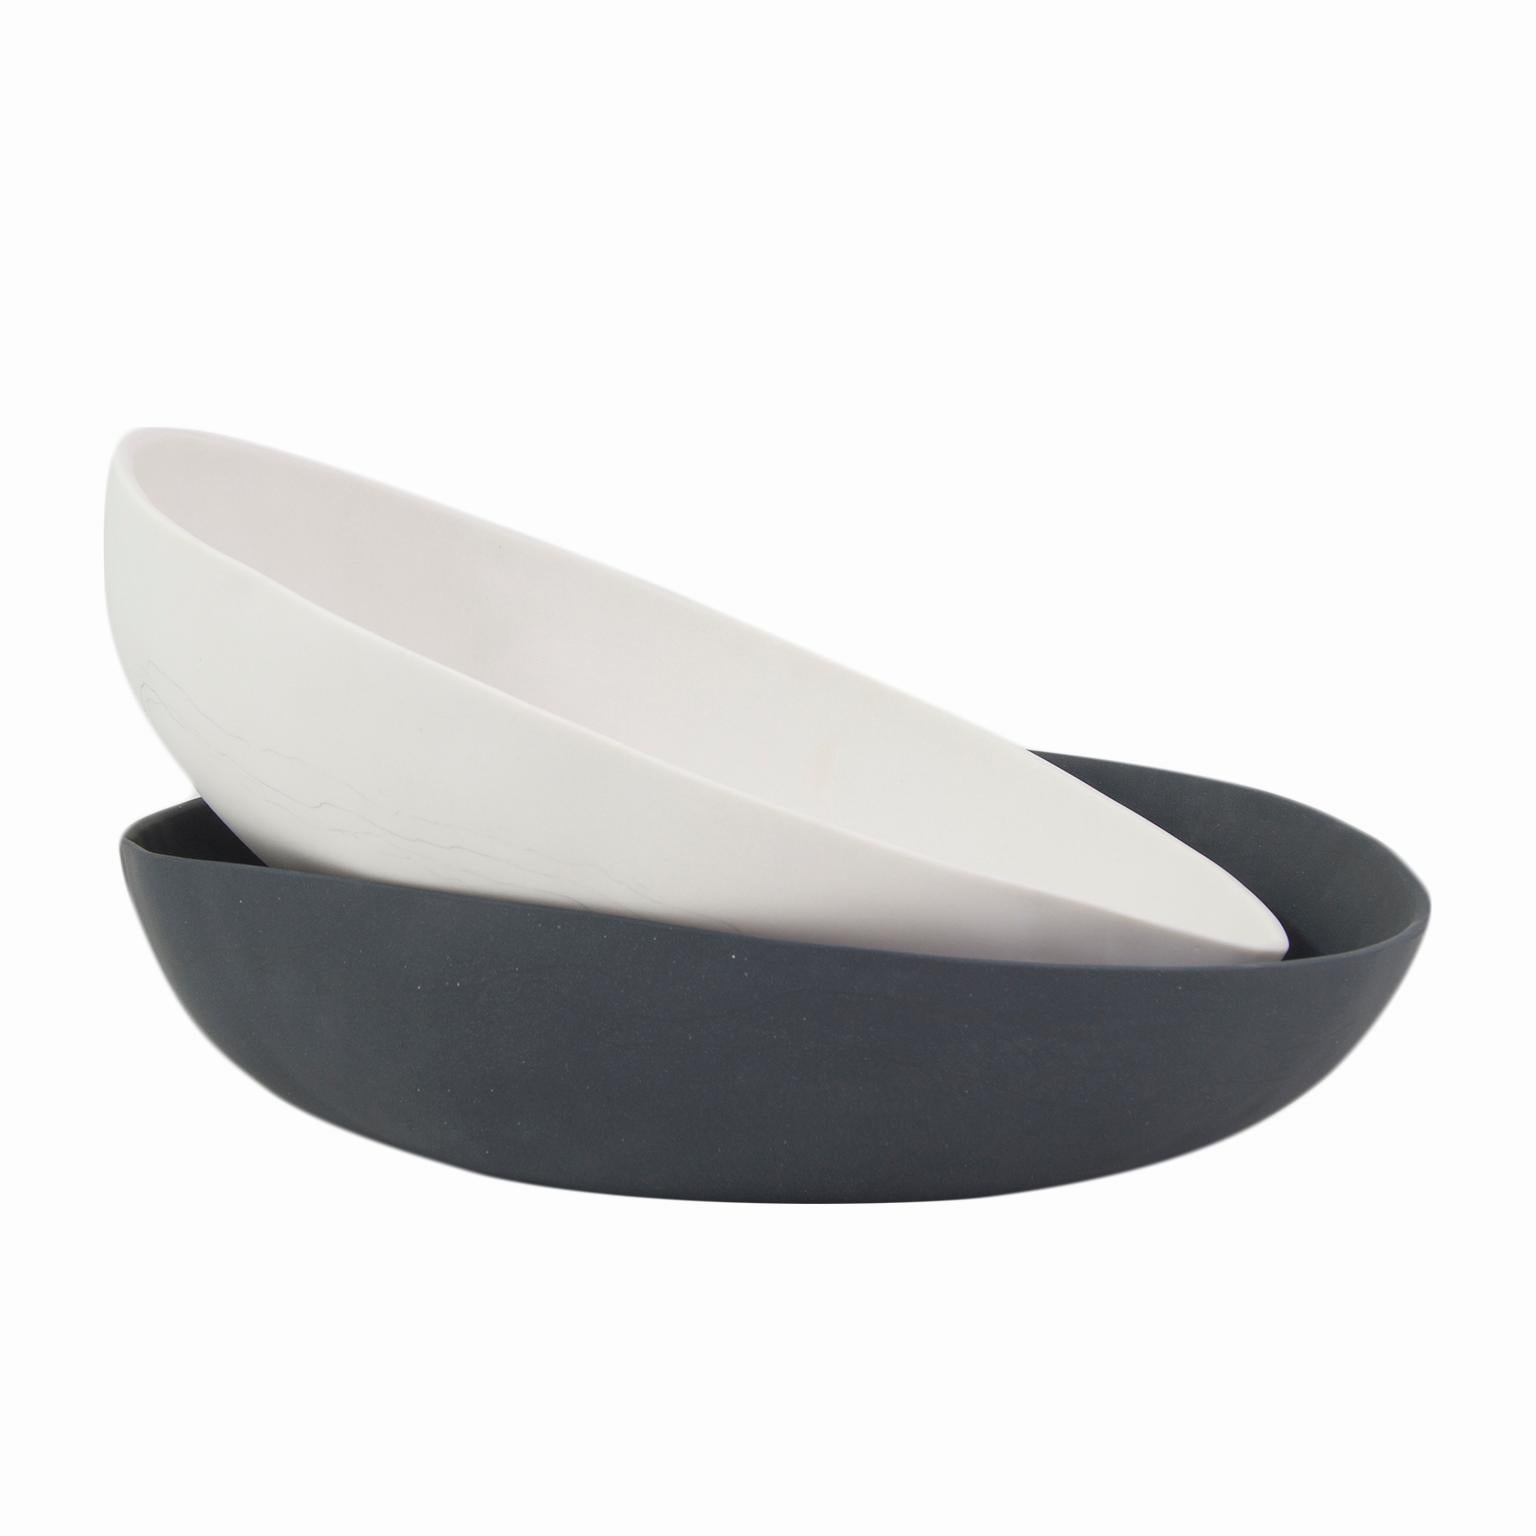 Contemporary Decorative Bowls Matte Black/White Porcelain For Sale